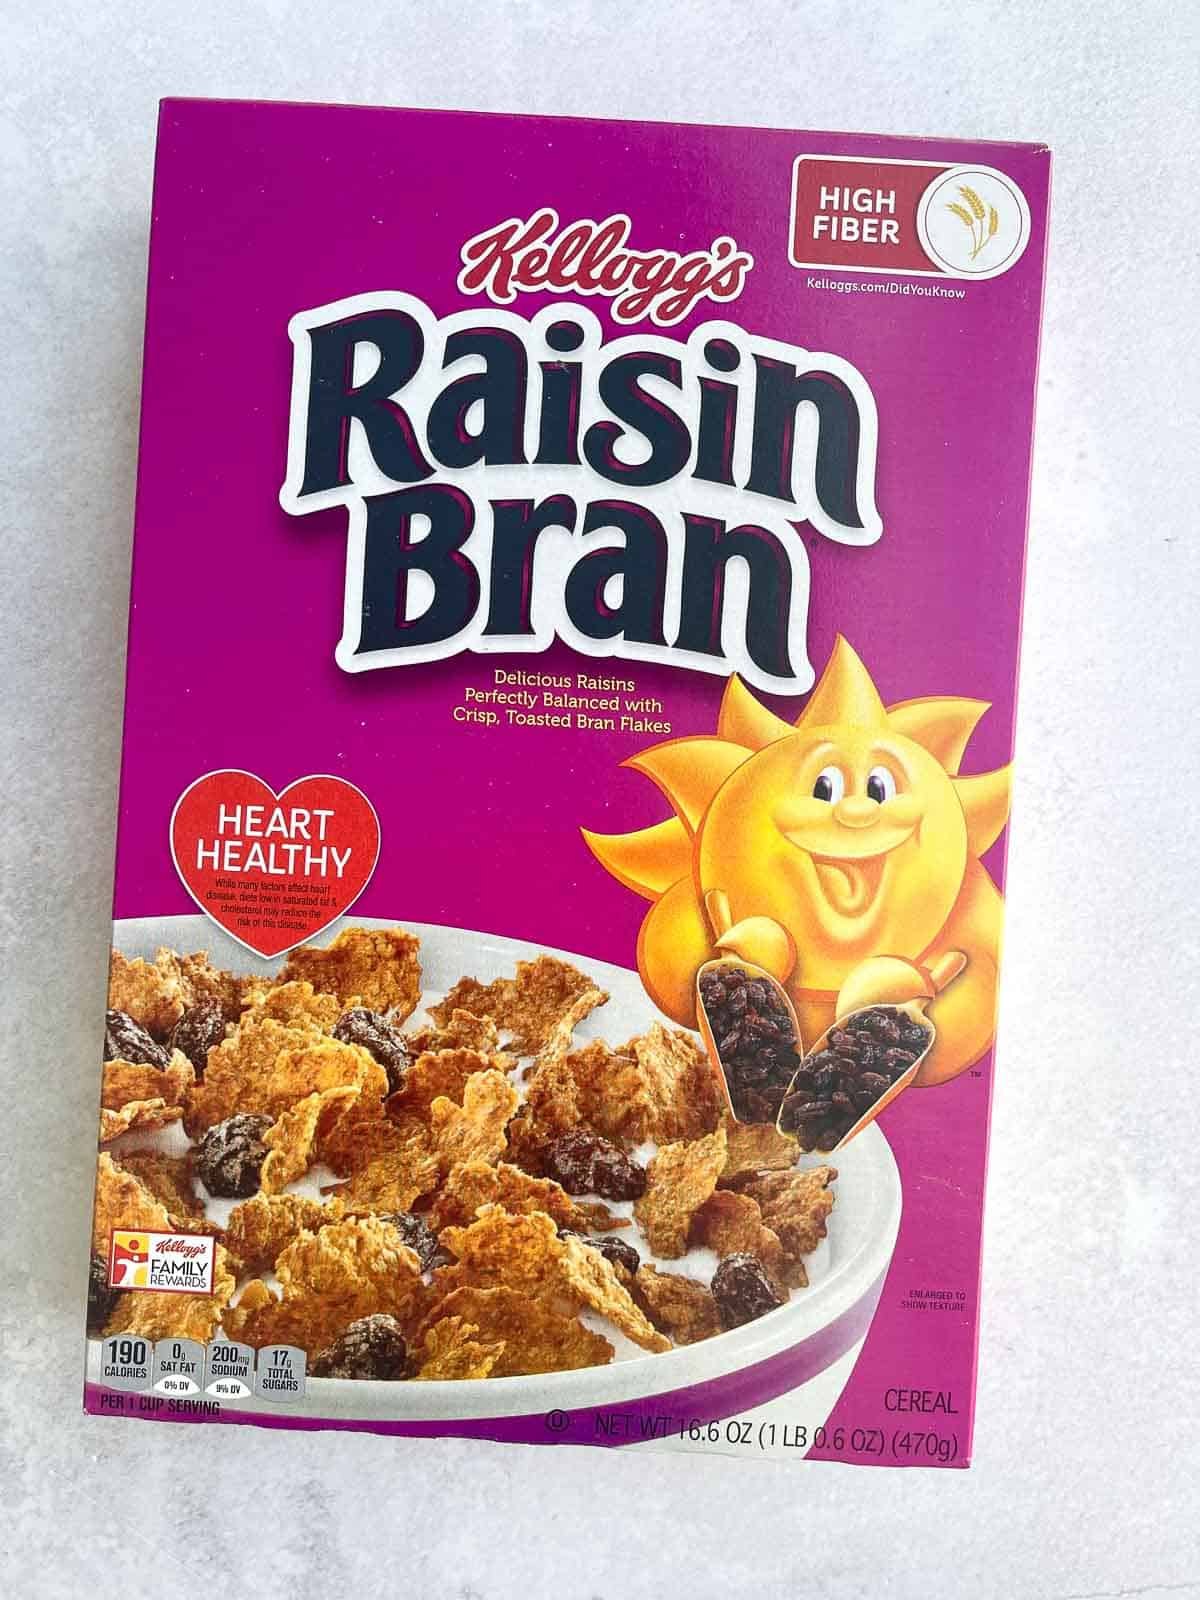 A box of Raisin Bran on a countertop